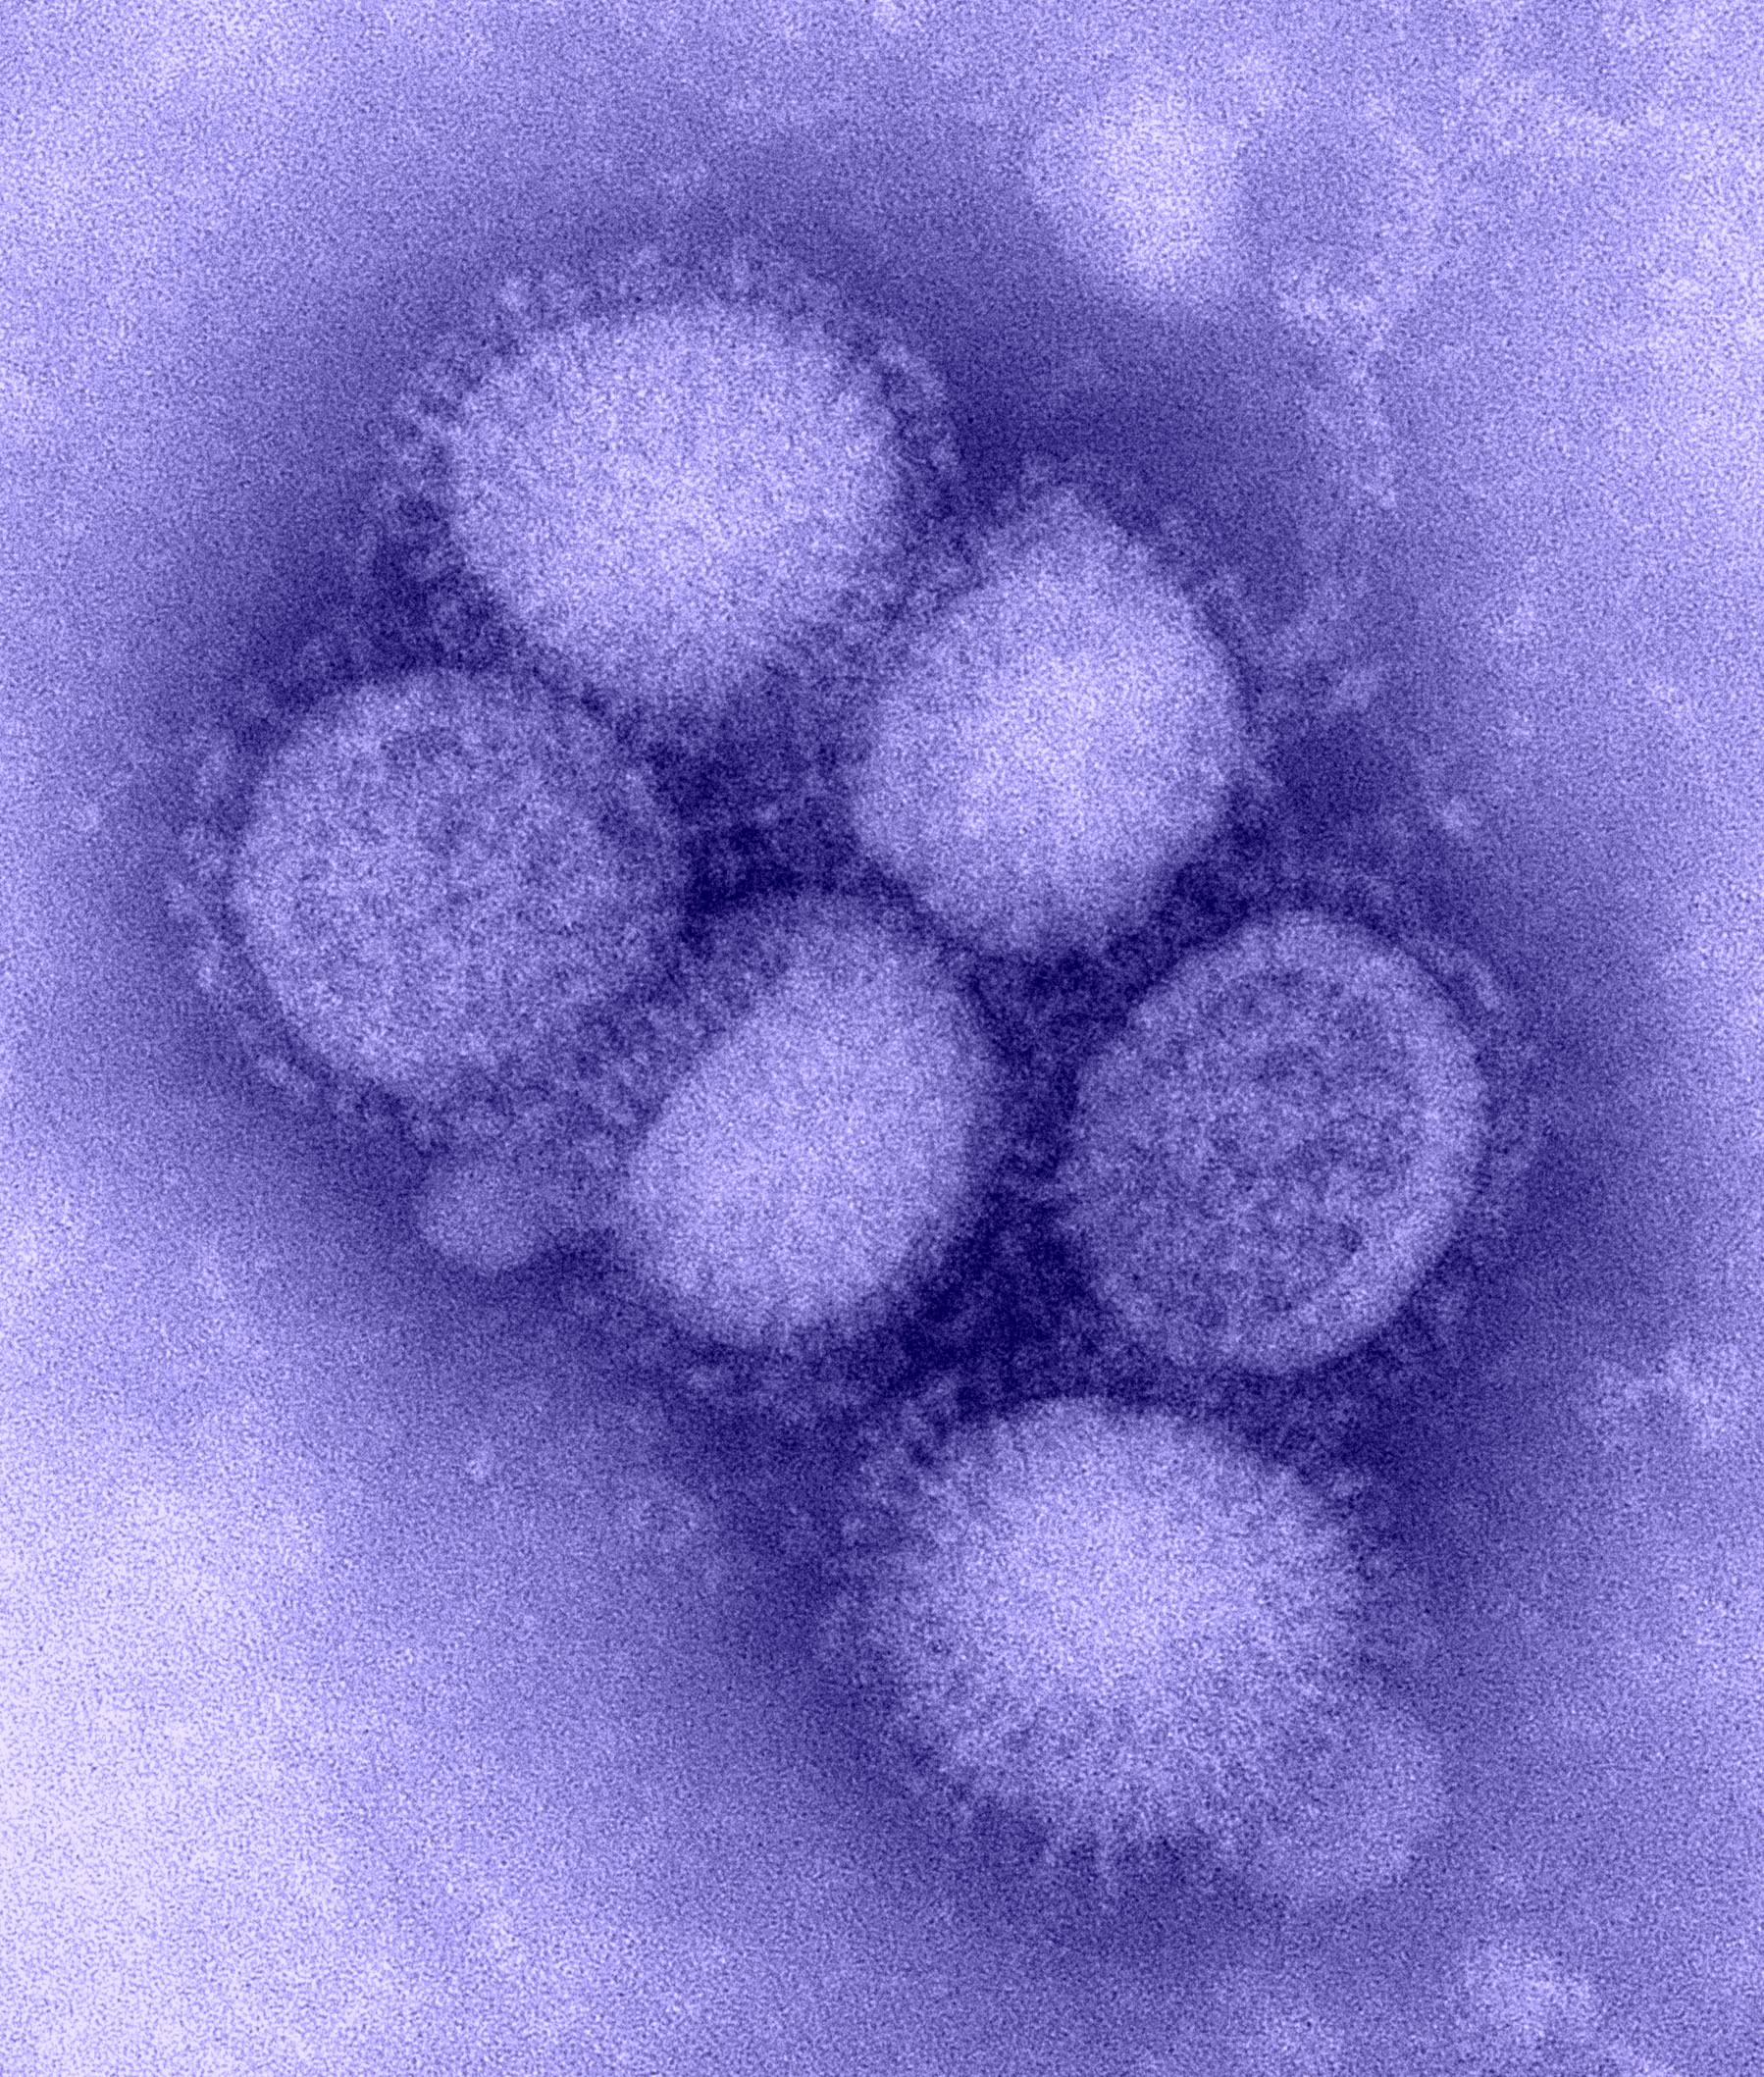 The H1N1 virus: Photo: CDC Influenza Laboratory